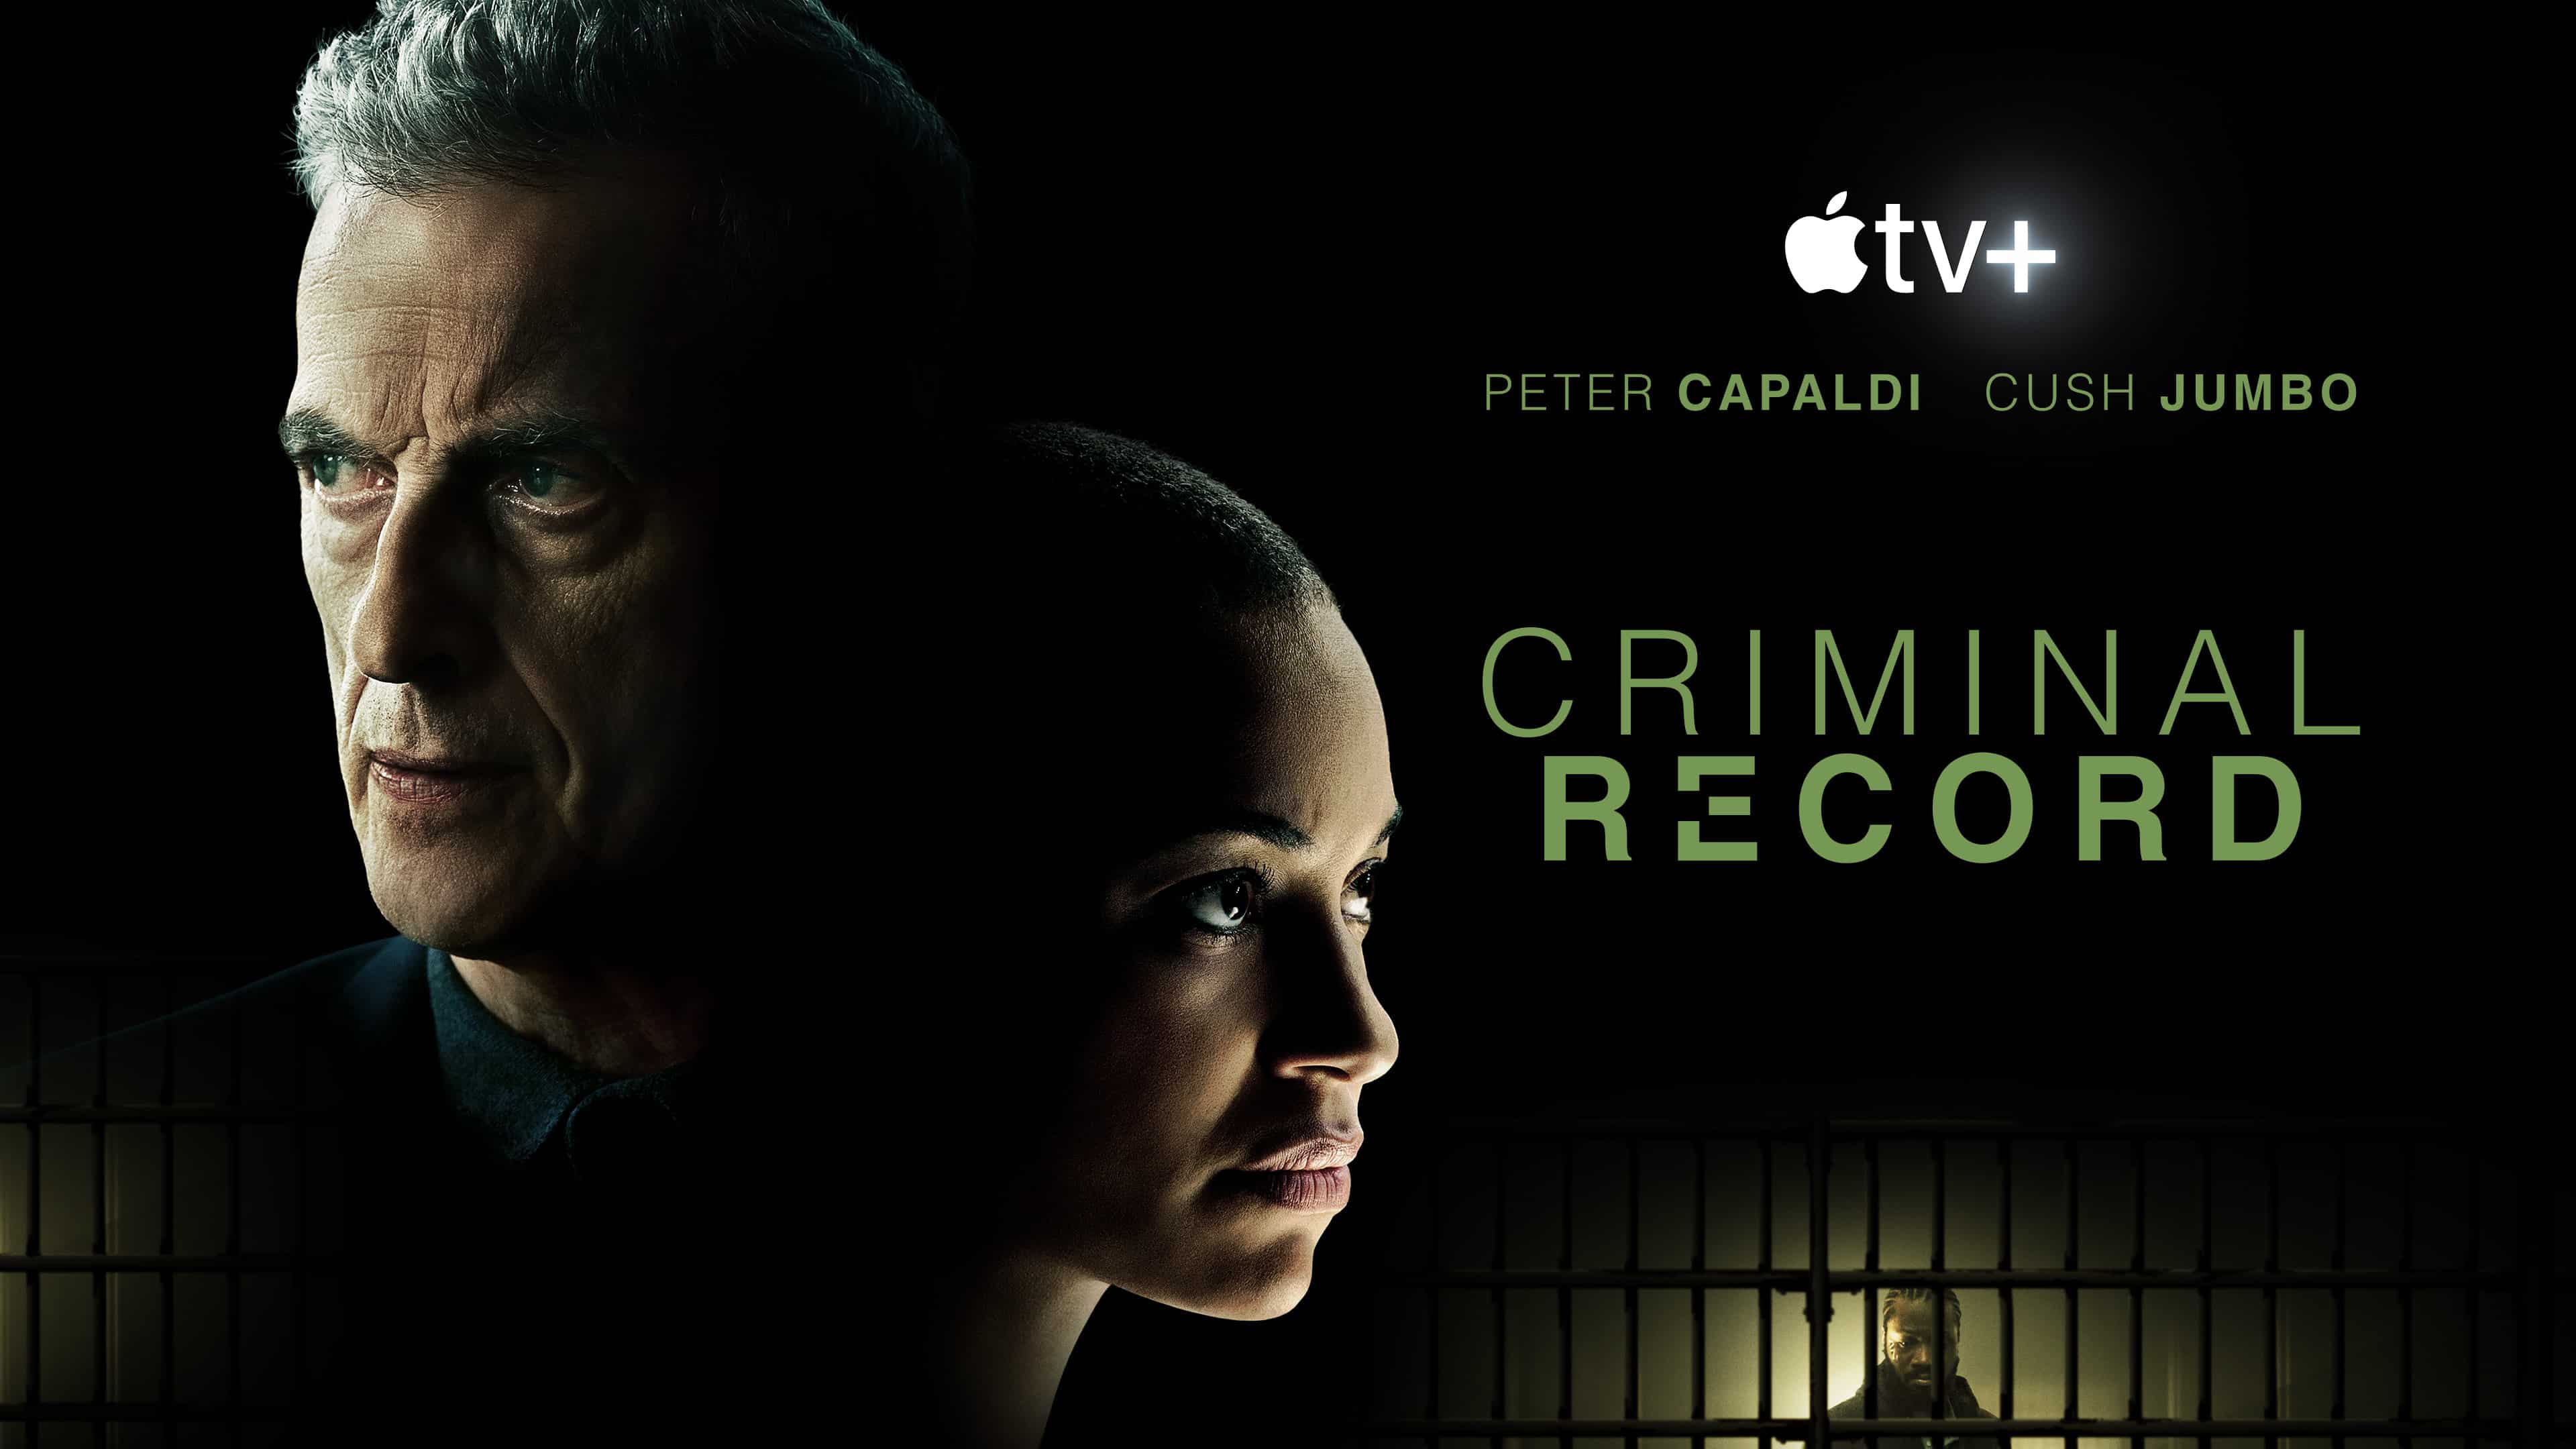 Estreia do dia no Apple TV+: “Criminal Record”, com Peter Capaldi